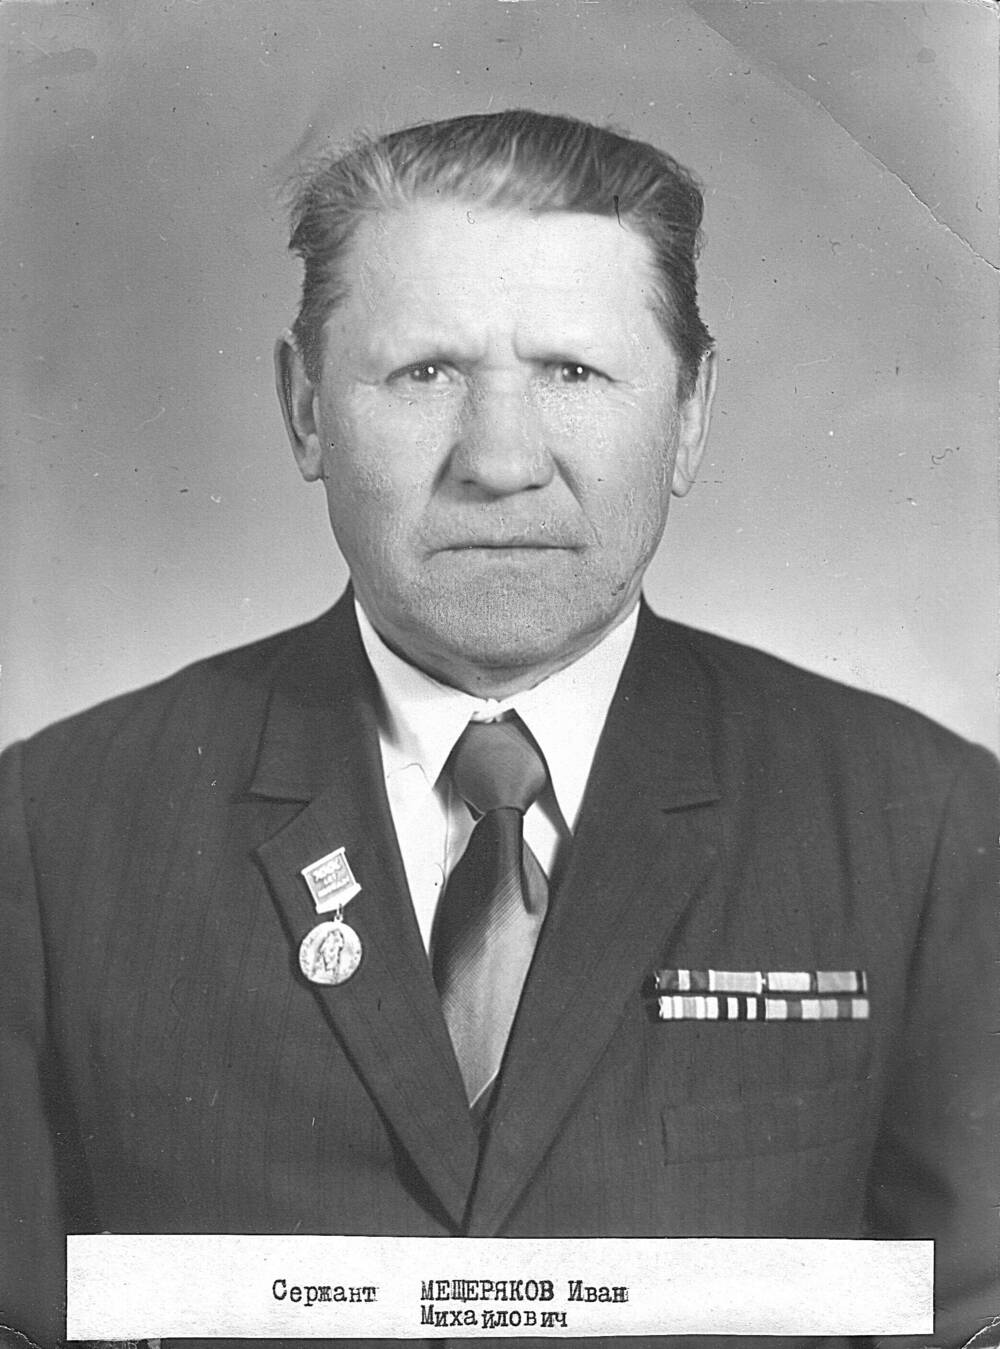 Фотография черно-белая Мещерякова Ивана Михайловича, ветерана Великой Отечественной войны 1941-1945 г. г.